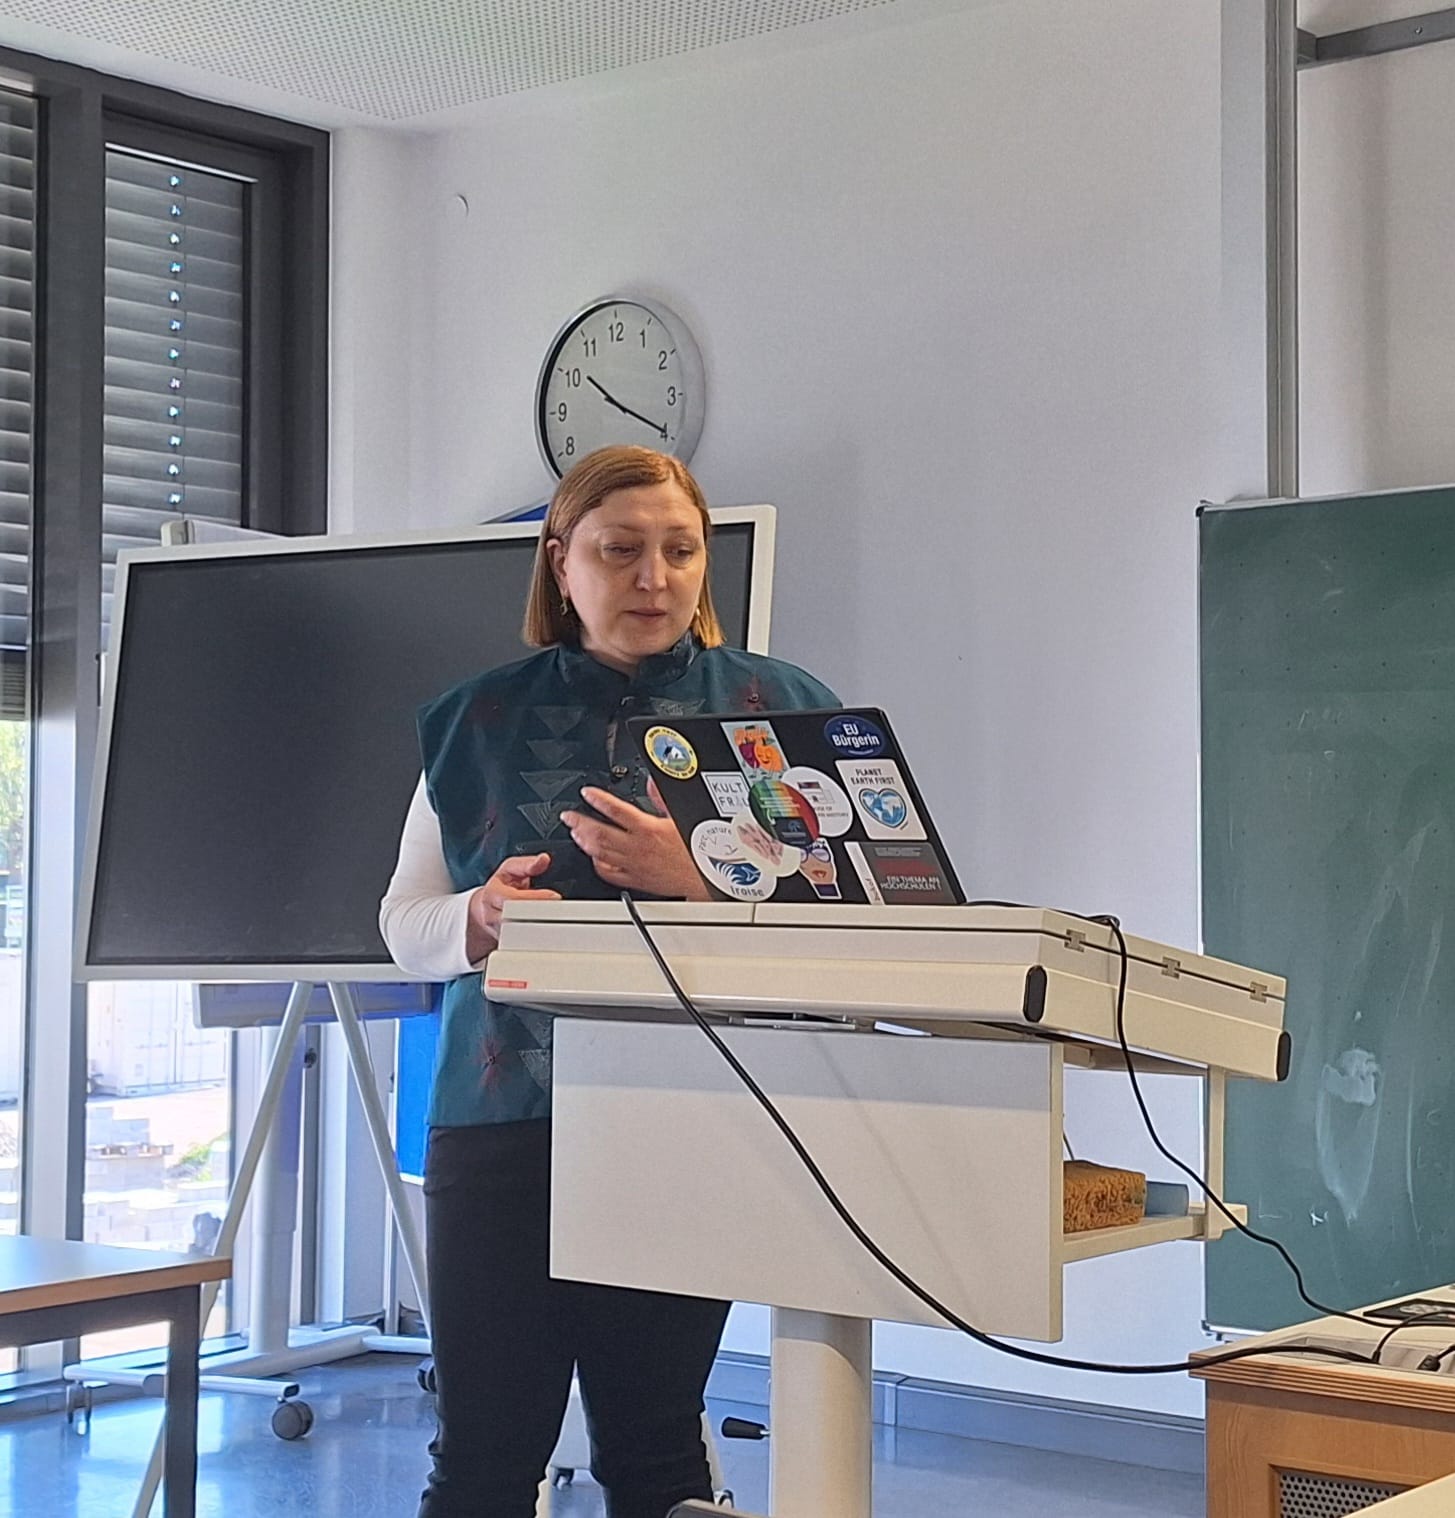 Профессор Нона Гелиташвили провела лекции в Техническом университете Ашаффенбурга в рамках Недели Международных Проектов - 